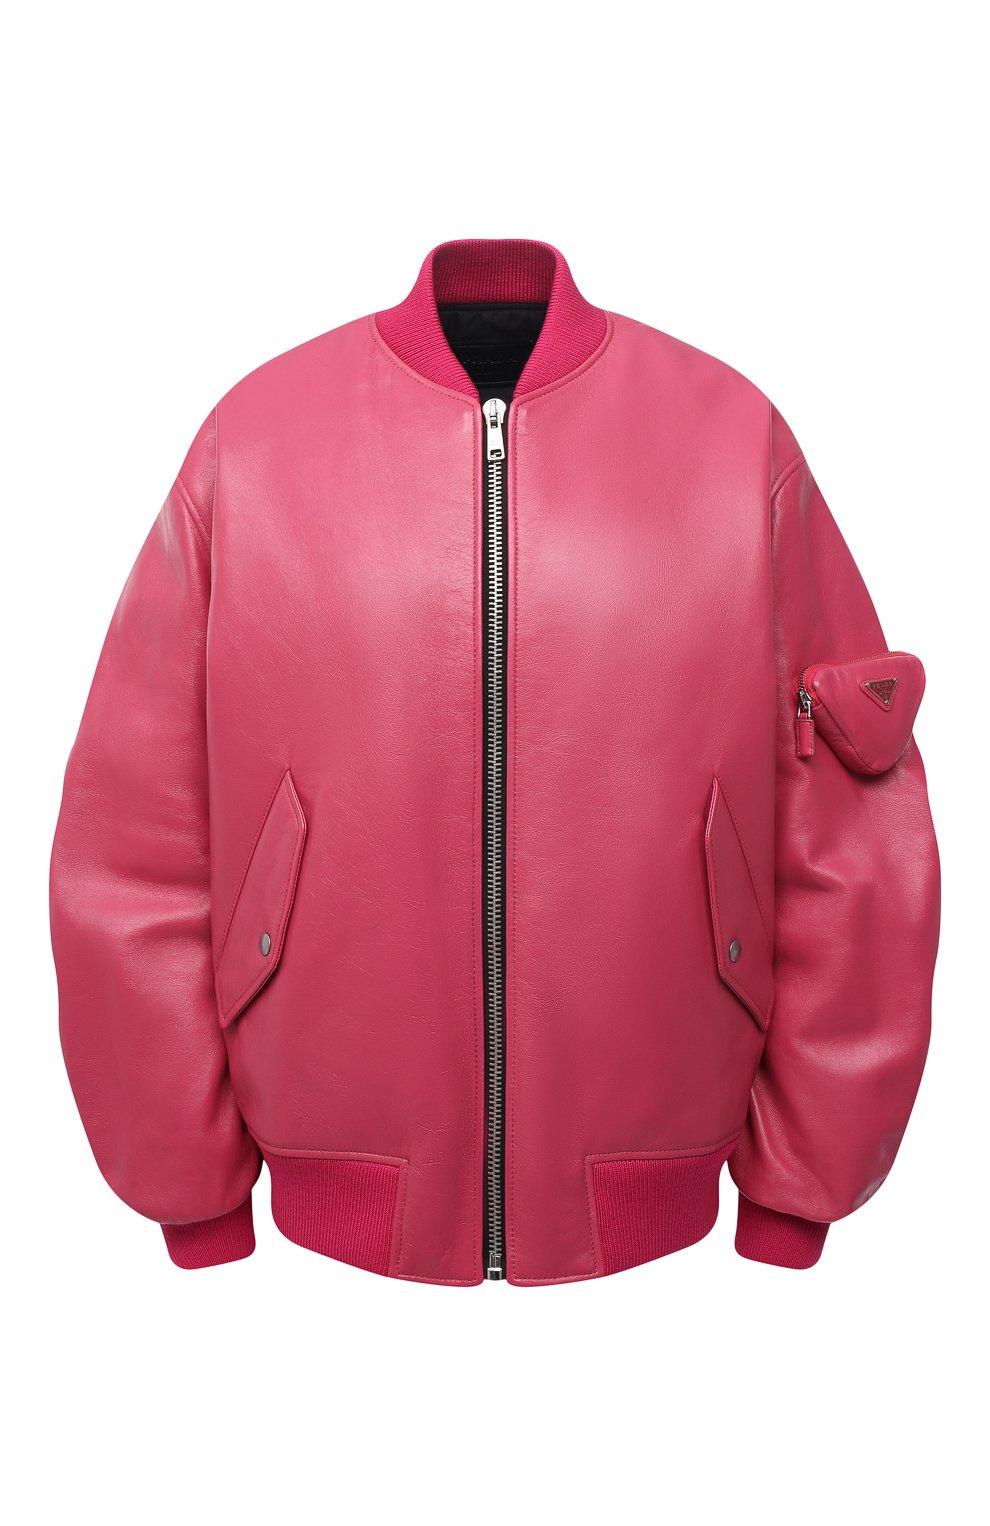 Одежда Prada, Кожаный бомбер Prada, Италия, Розовый, Кожа натуральная: 100%;, 12309468  - купить